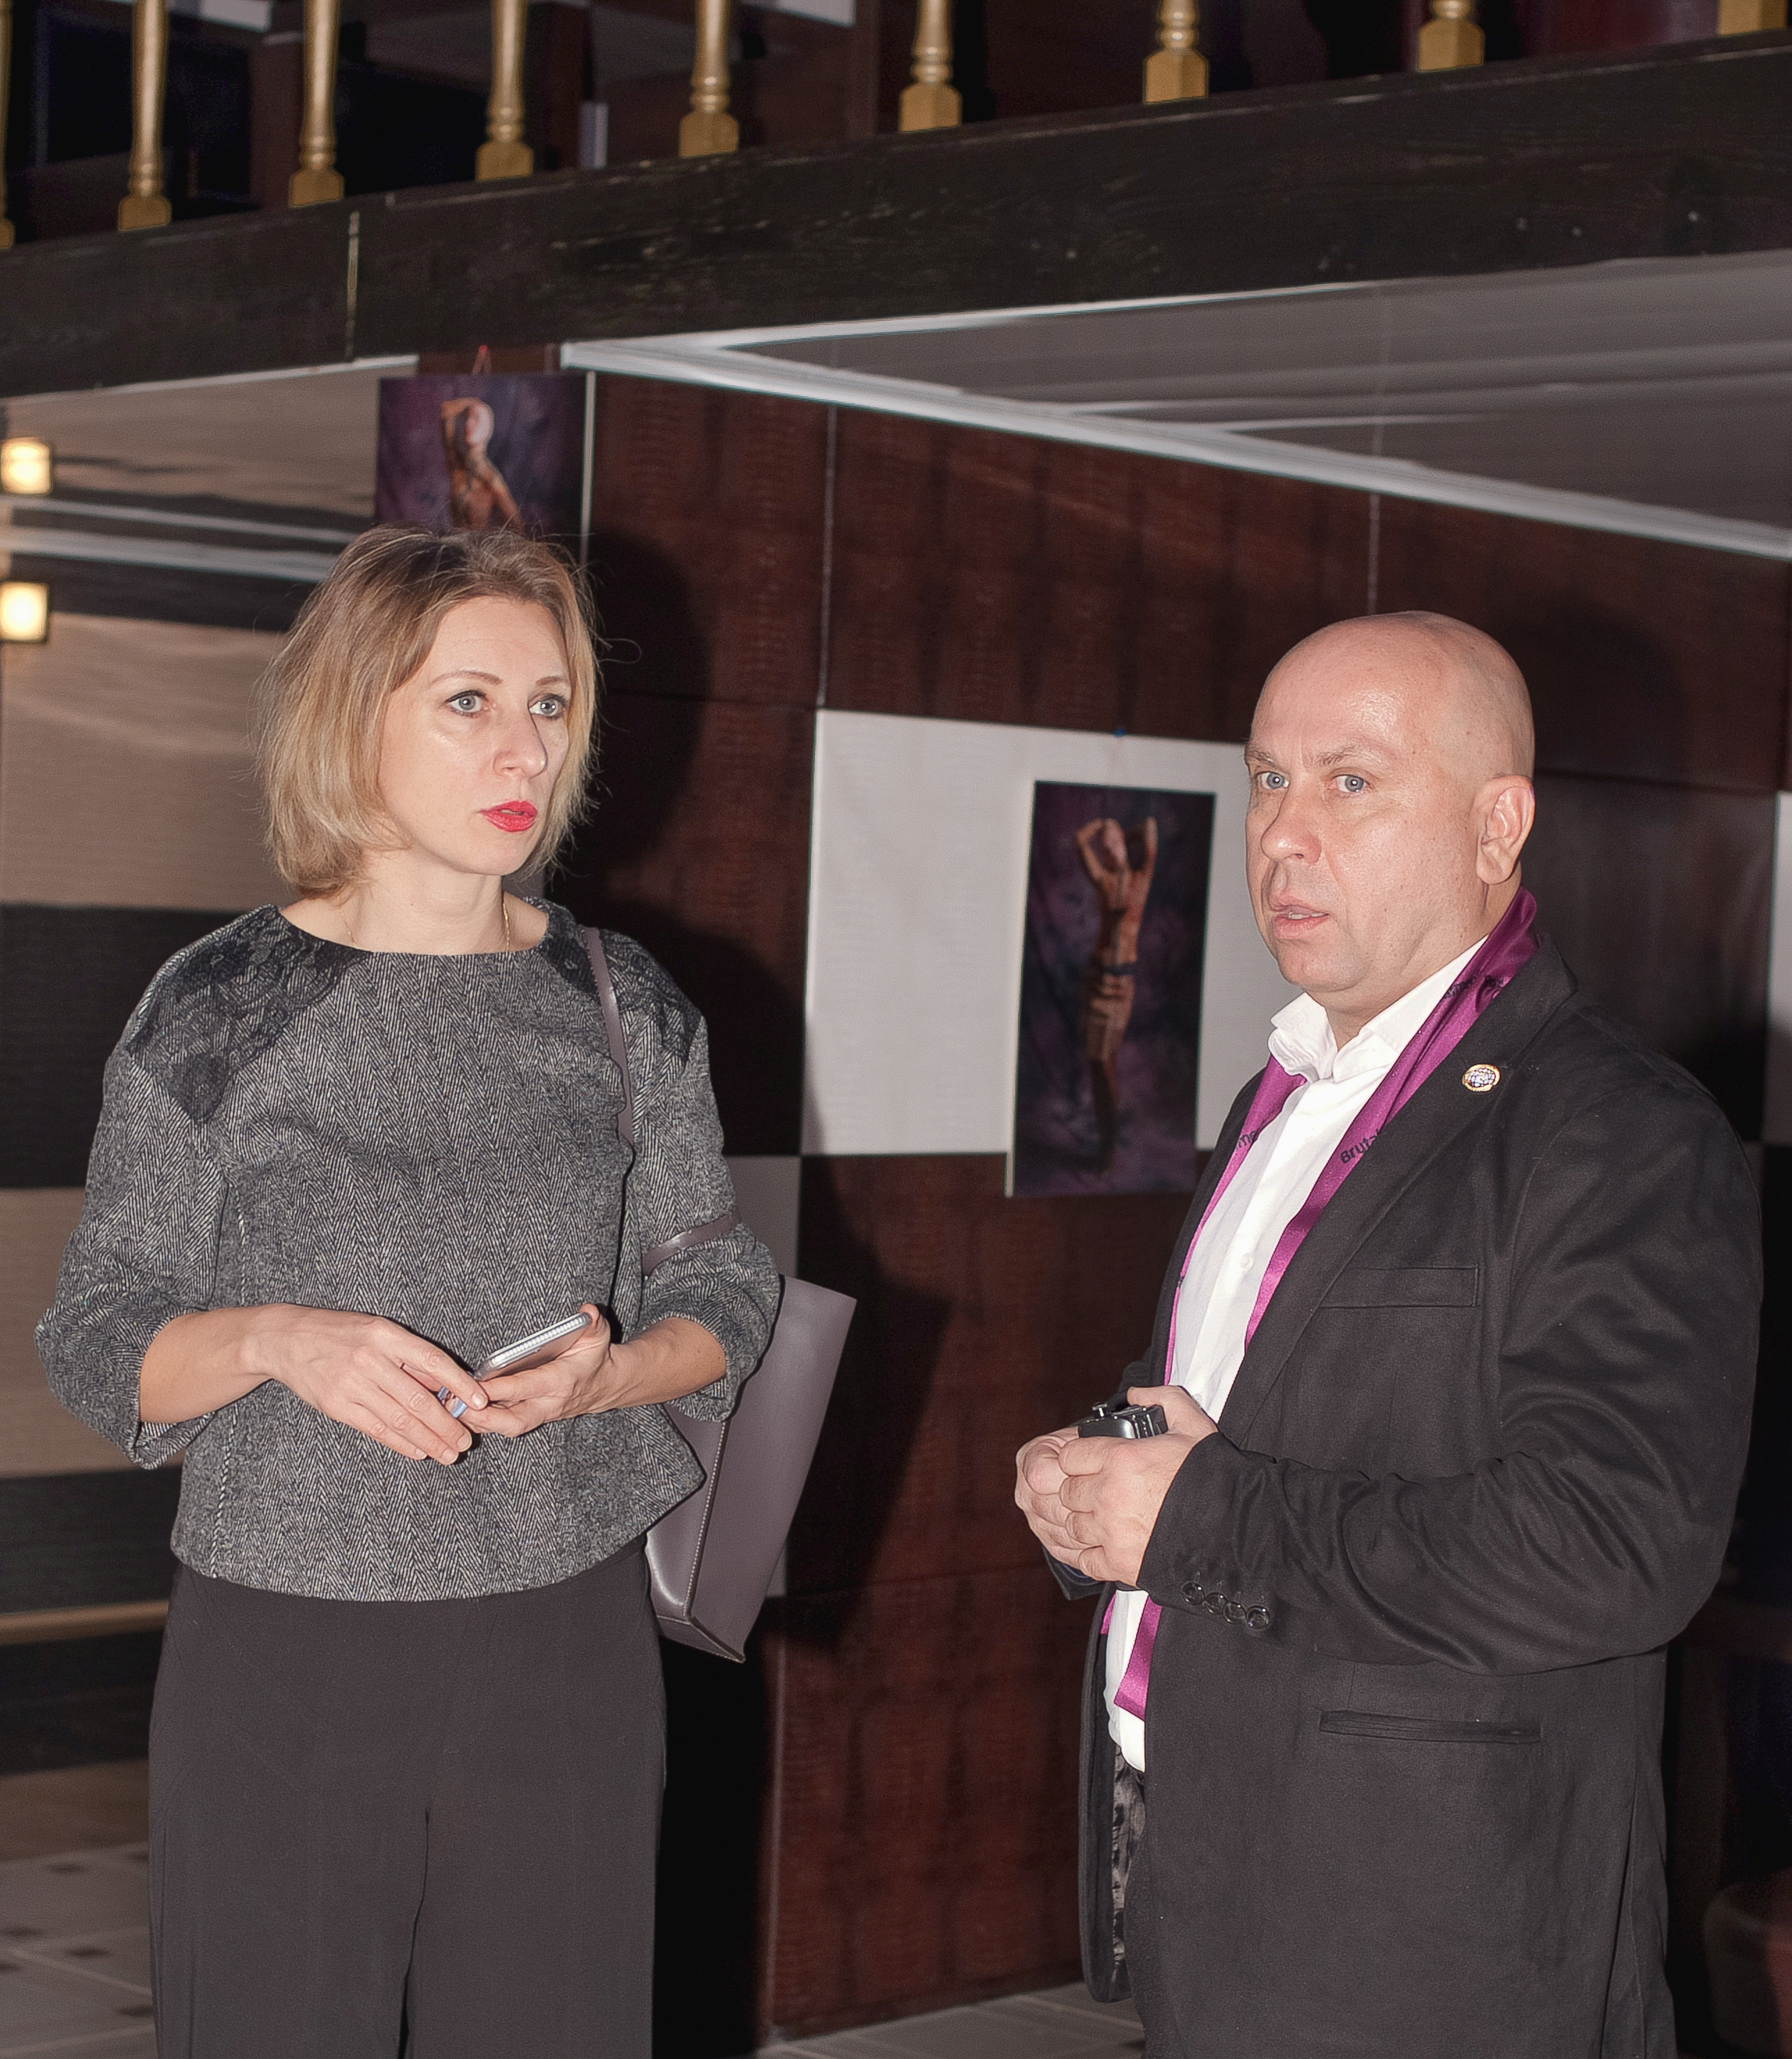 Официальный представитель МИДа России Мария Захарова на открытии фотовыставки детей с алопецией. 26 ноября 2016 года, Москва